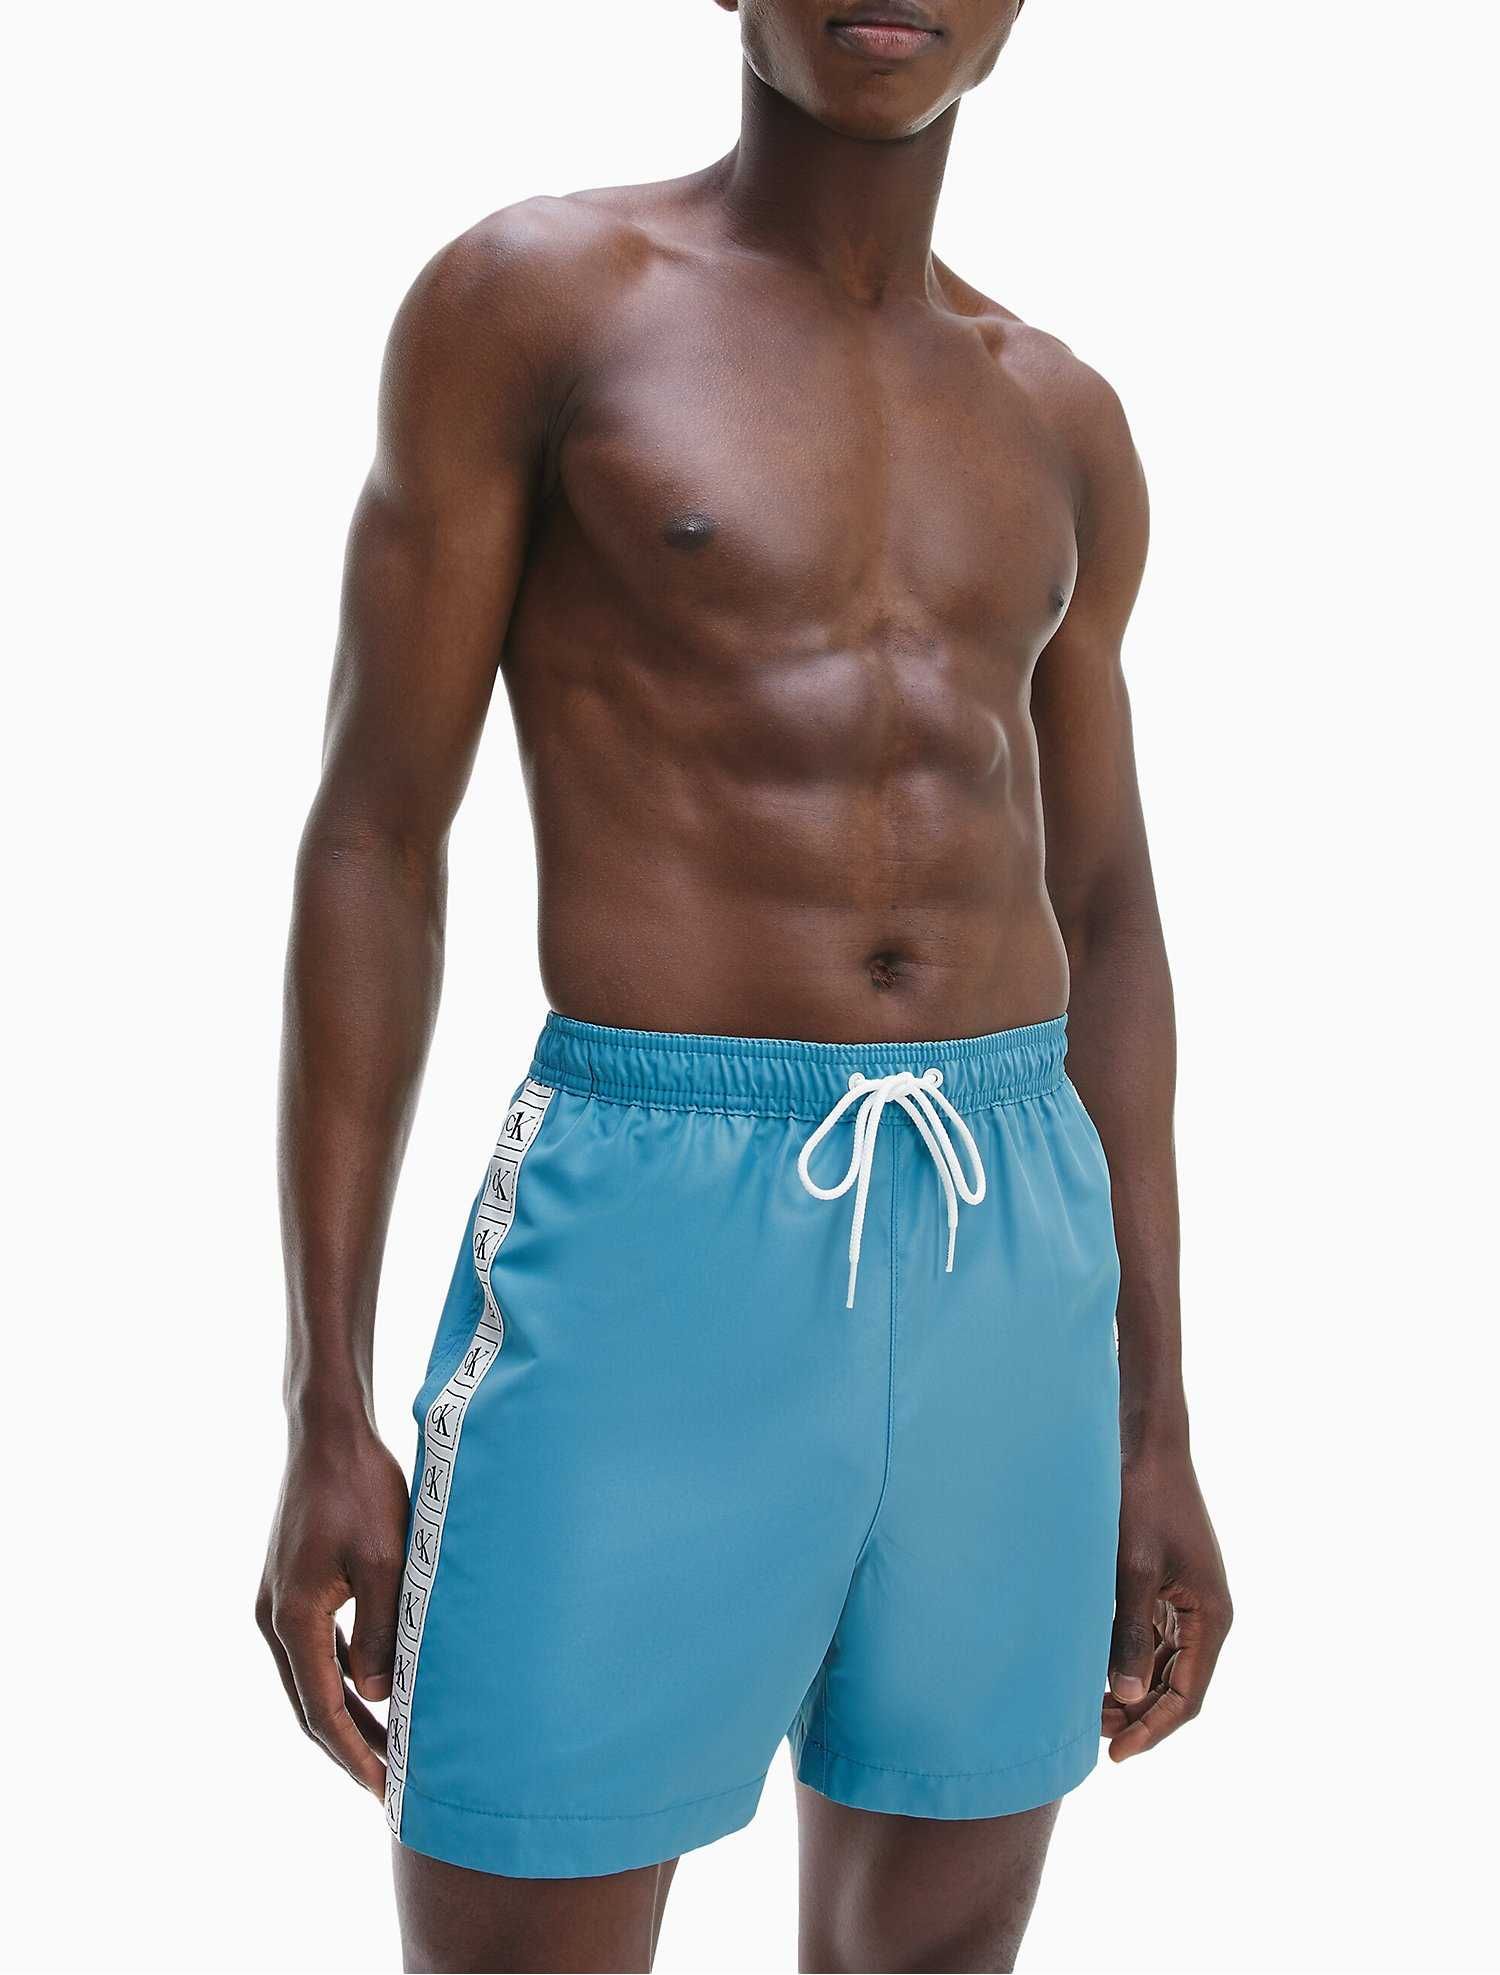 Новые шорты - плавки calvin klein (ck swim teal shorts)с америки S